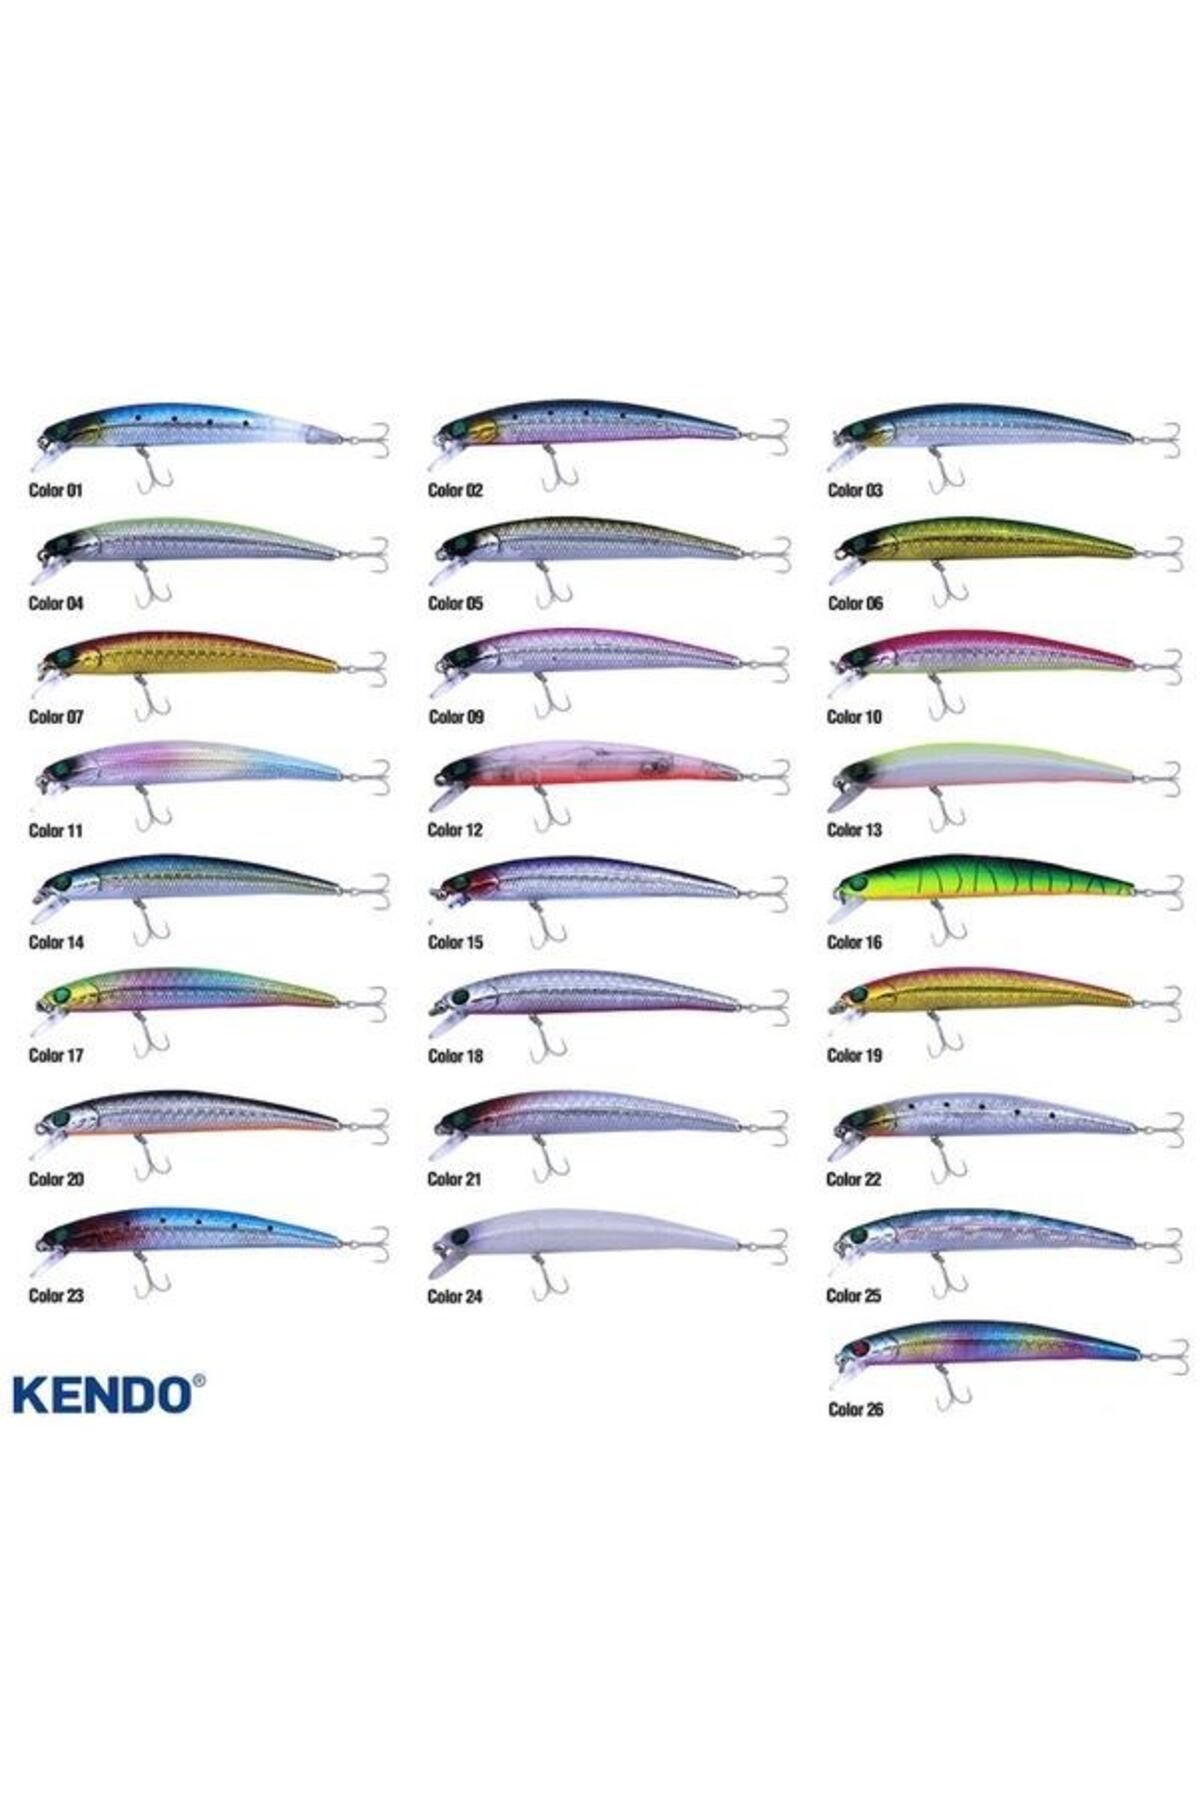 Kendo Zero Arise 9.0 Cm 5.7g Floating Suni Yem